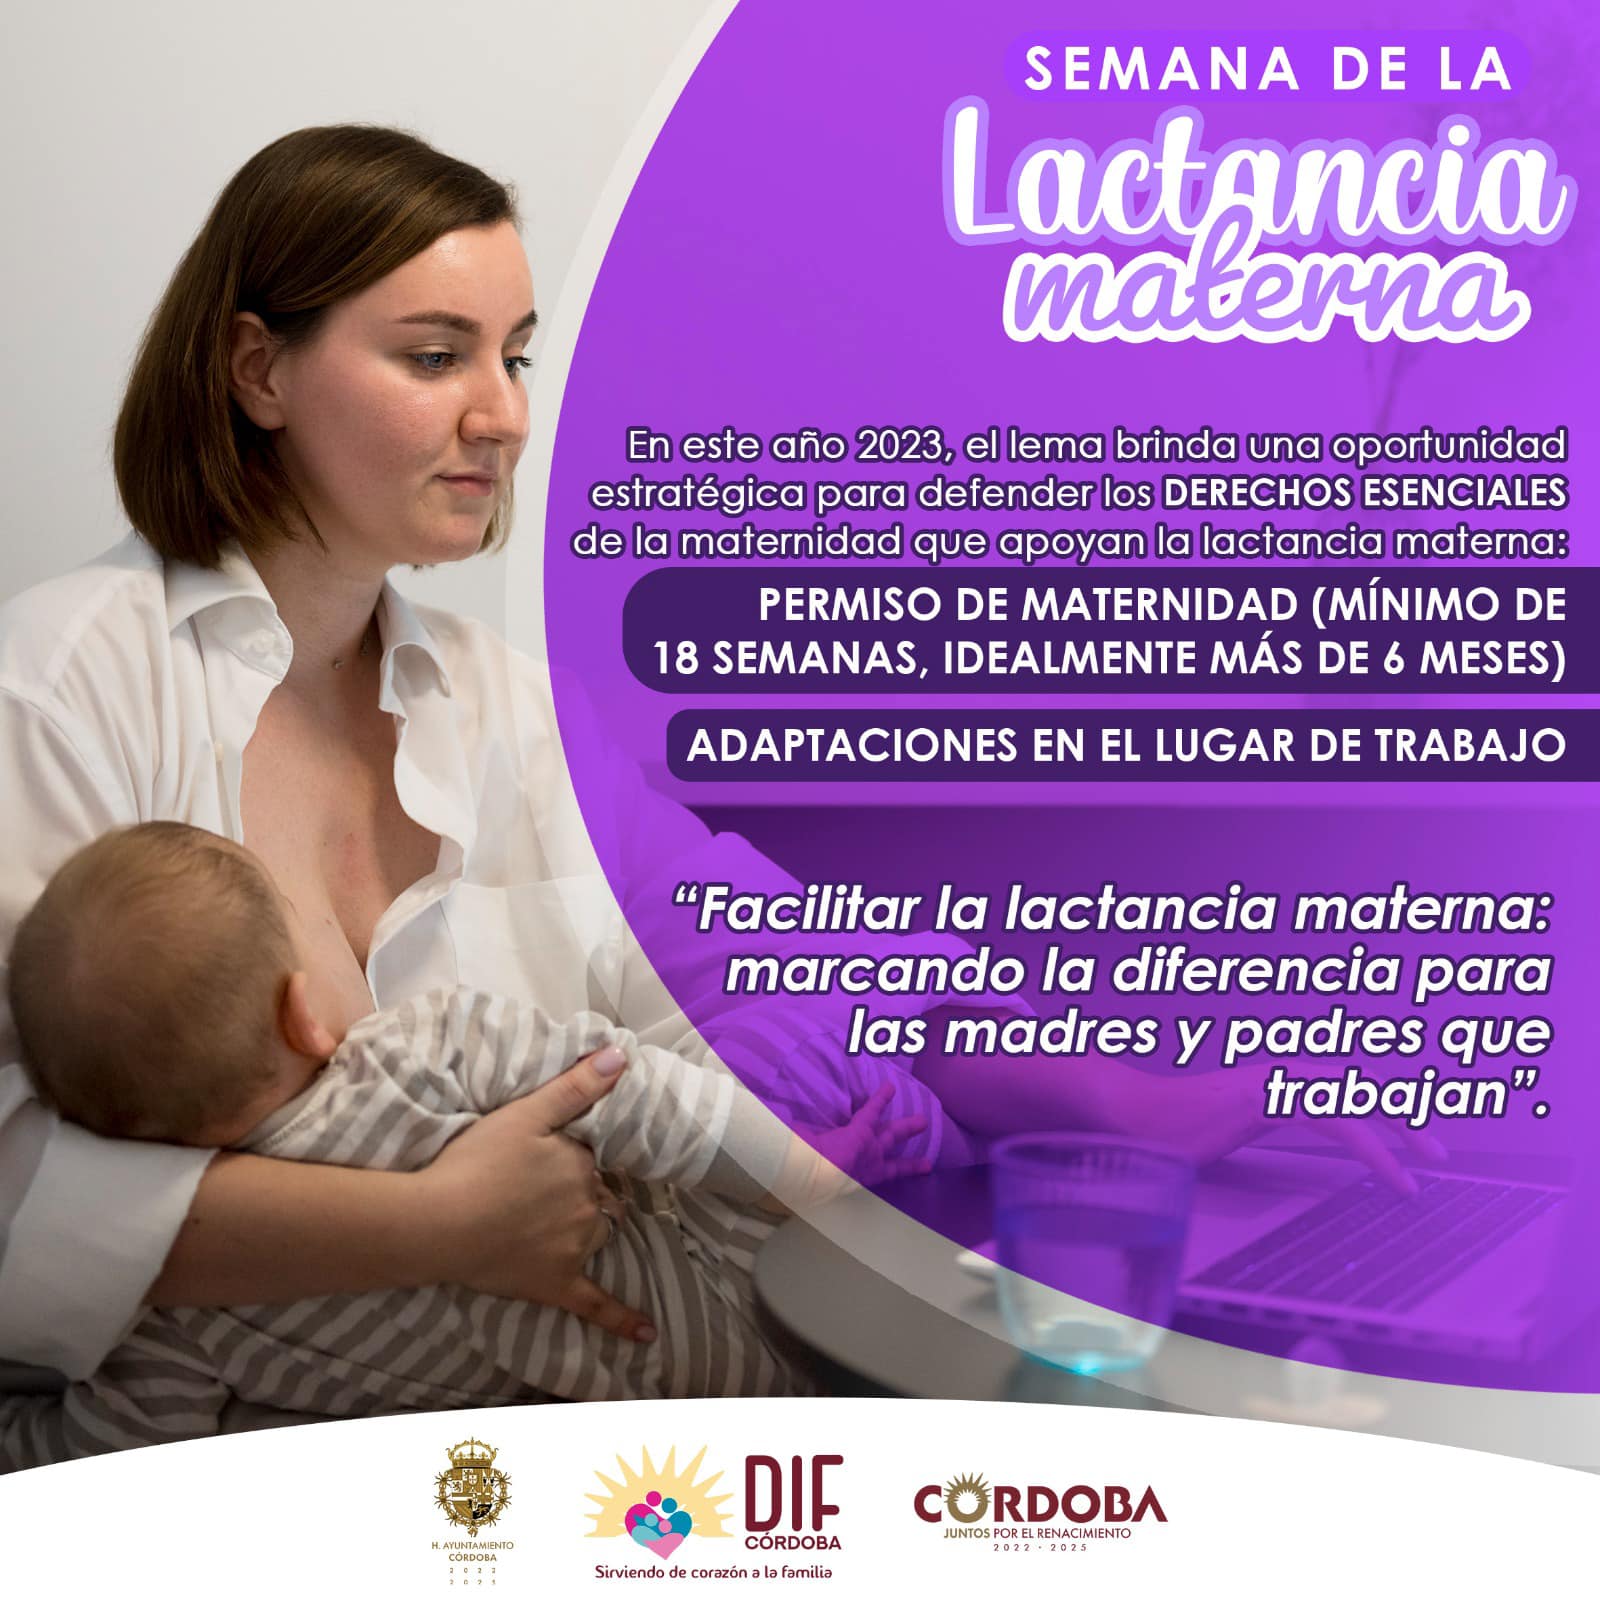 La Lactancia Materna tiene grandes beneficios para los bebés y sus mamás.